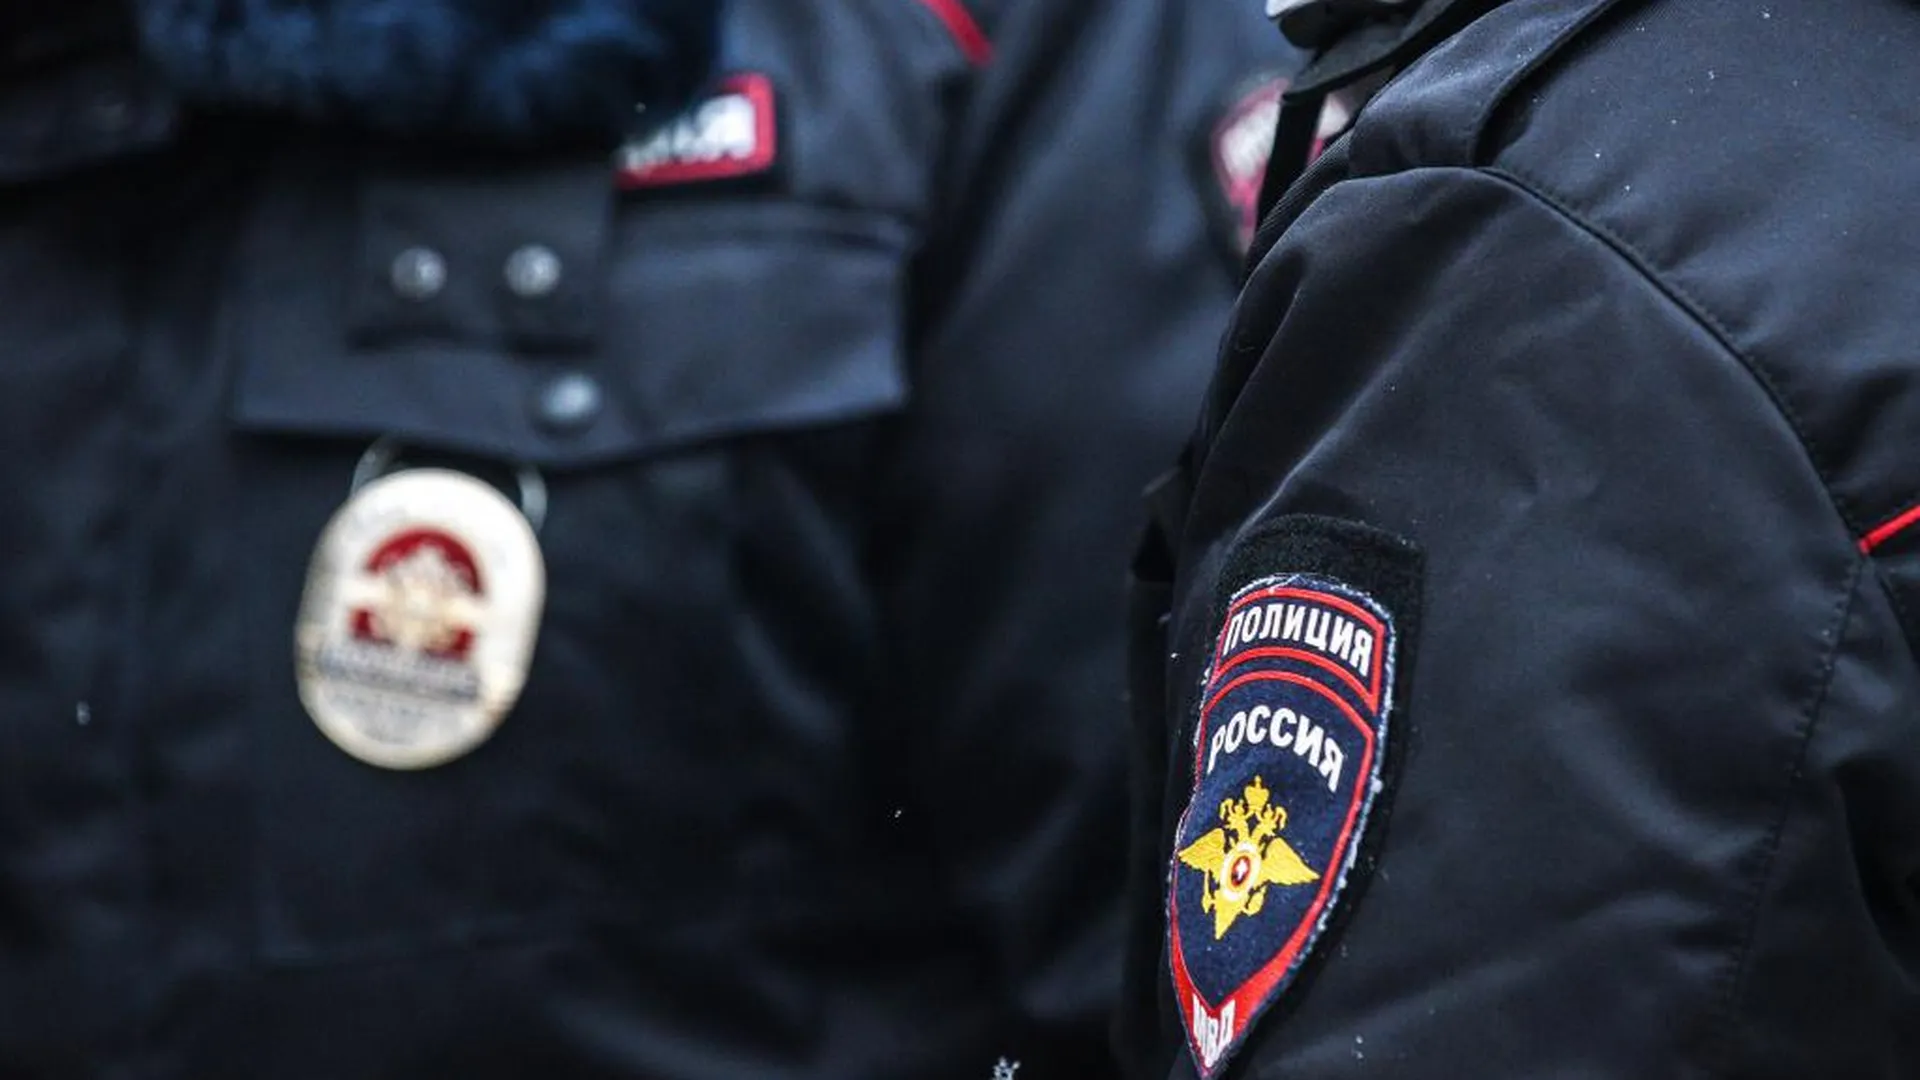 Московских полицейских наградят за задержание мужчины с гранатой